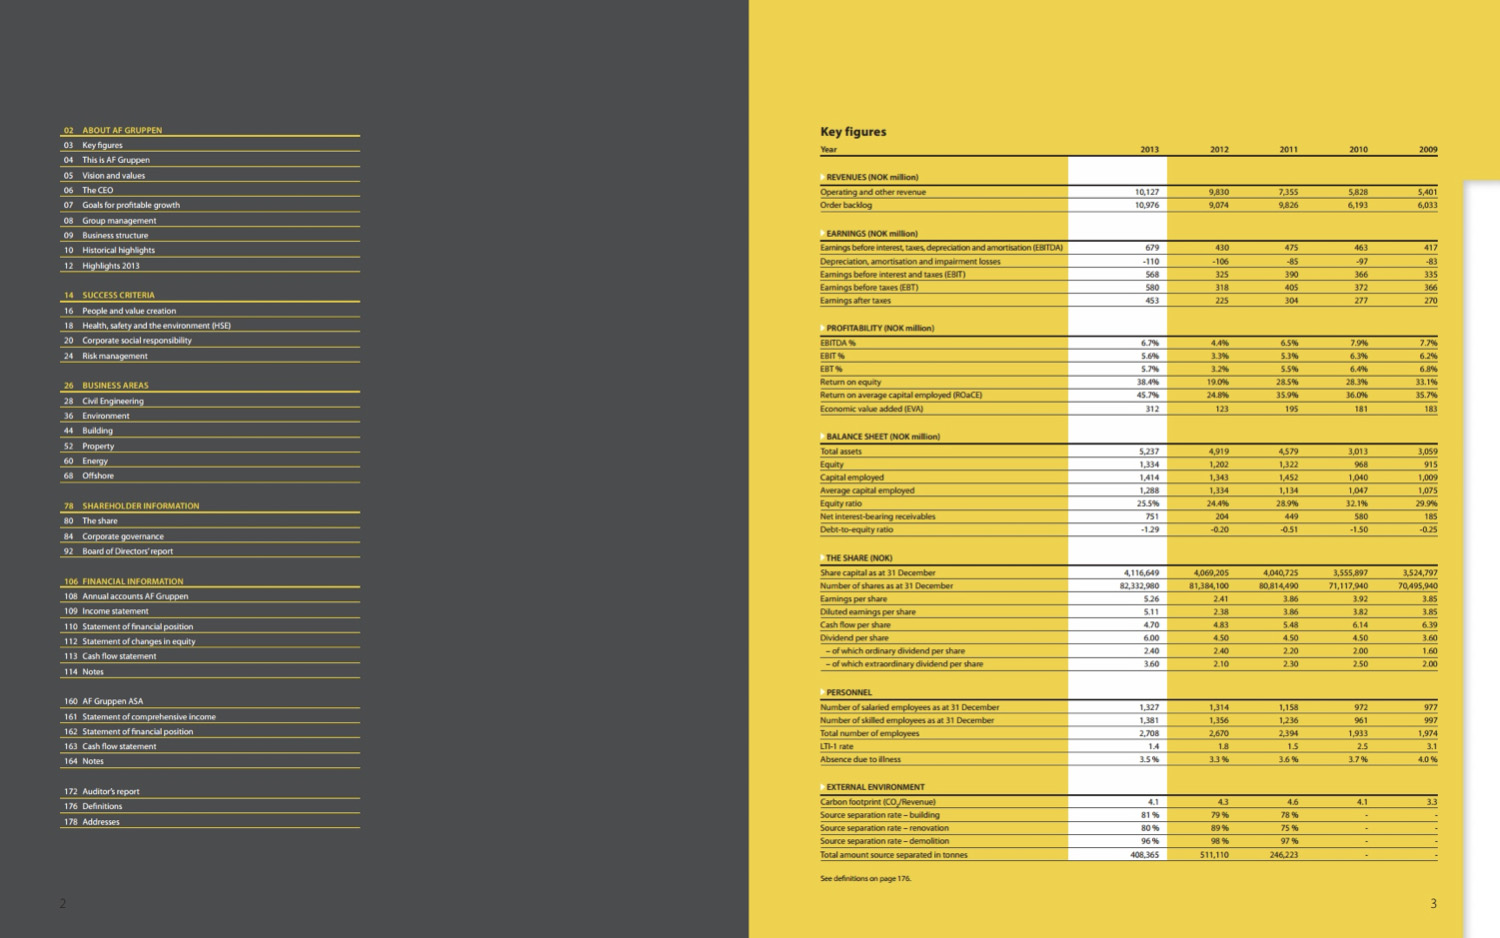 画册设计中信息图表的排版设计